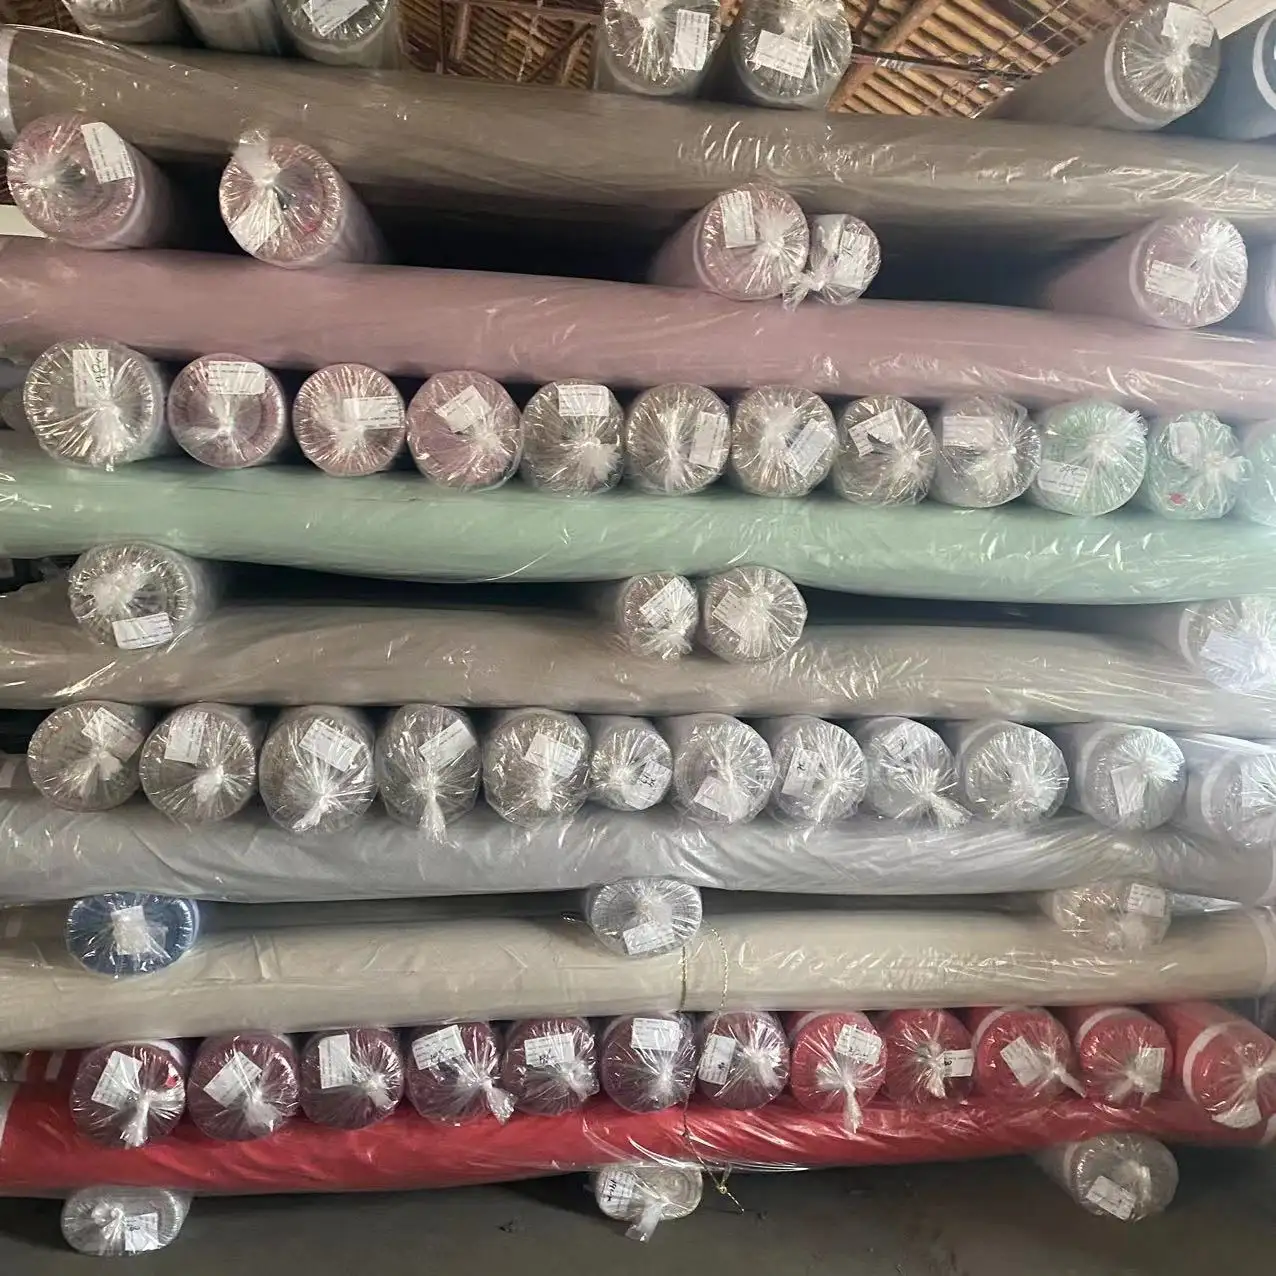 Xinlihao उच्च गुणवत्ता वाले माइक्रोफाइबर ठोस रंगे बेडशीट सामग्री को घरेलू कपड़ा के लिए साफ किया जाता है